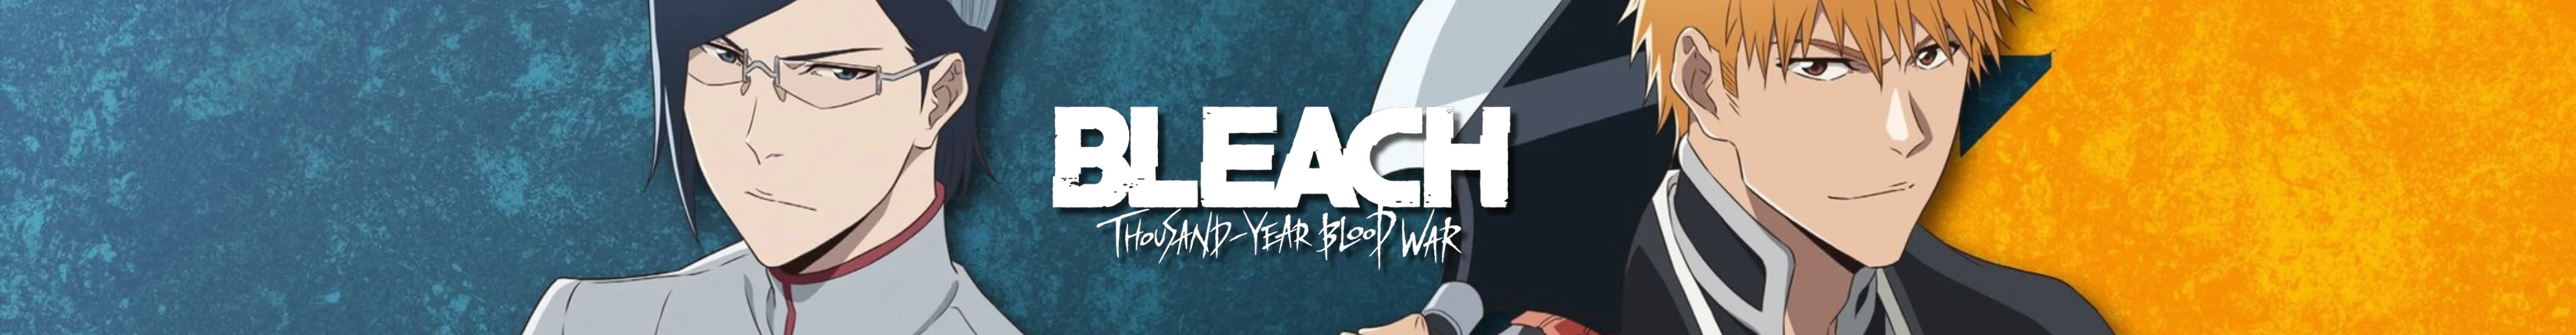 Bleach keychain banner